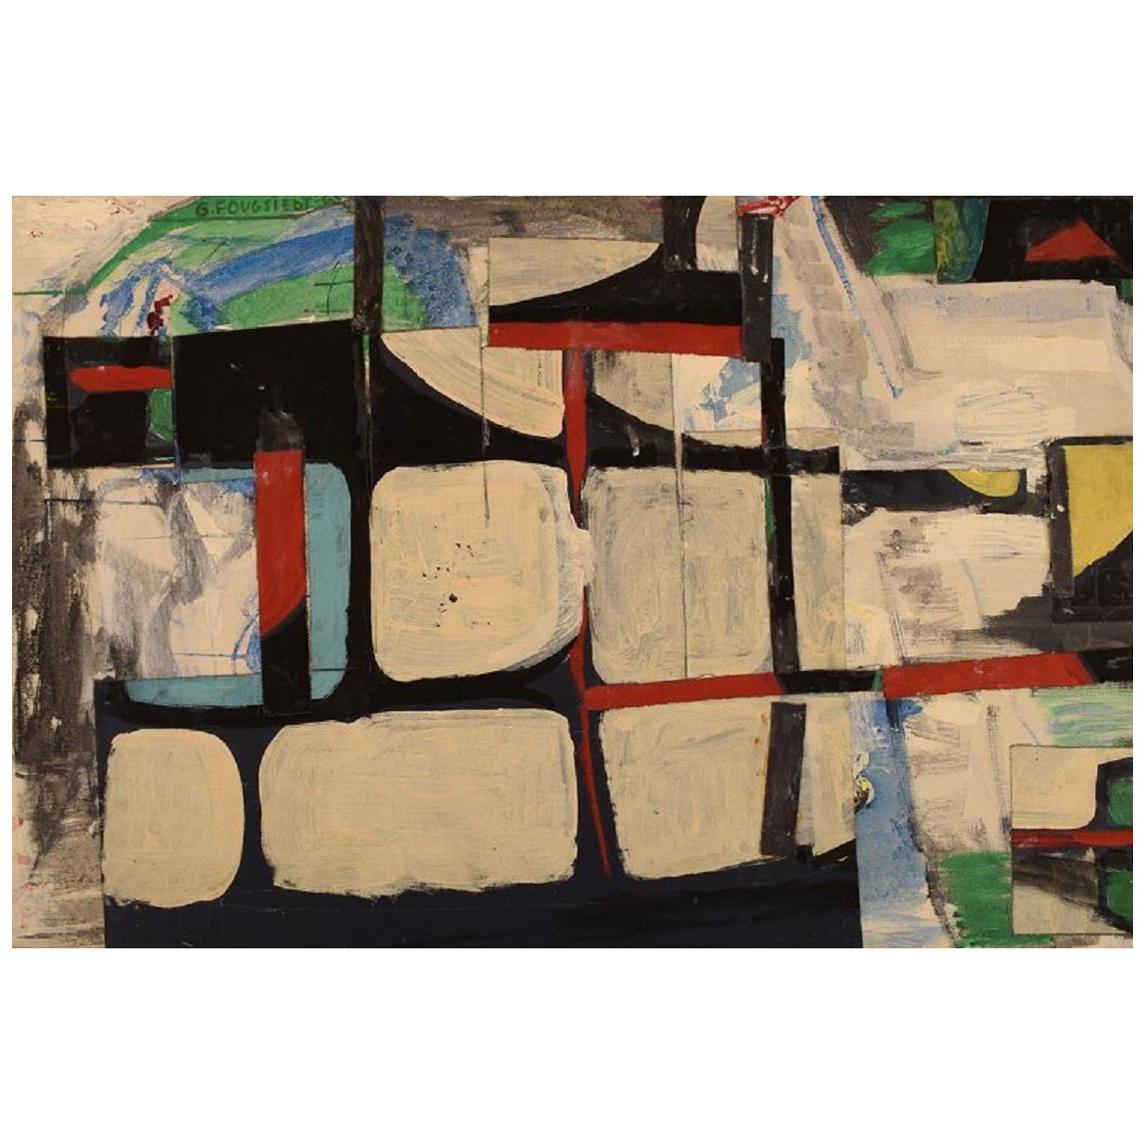 Gösta Fougstedt, Sweden, Oil on Canvas, Modernist Composition, 1965